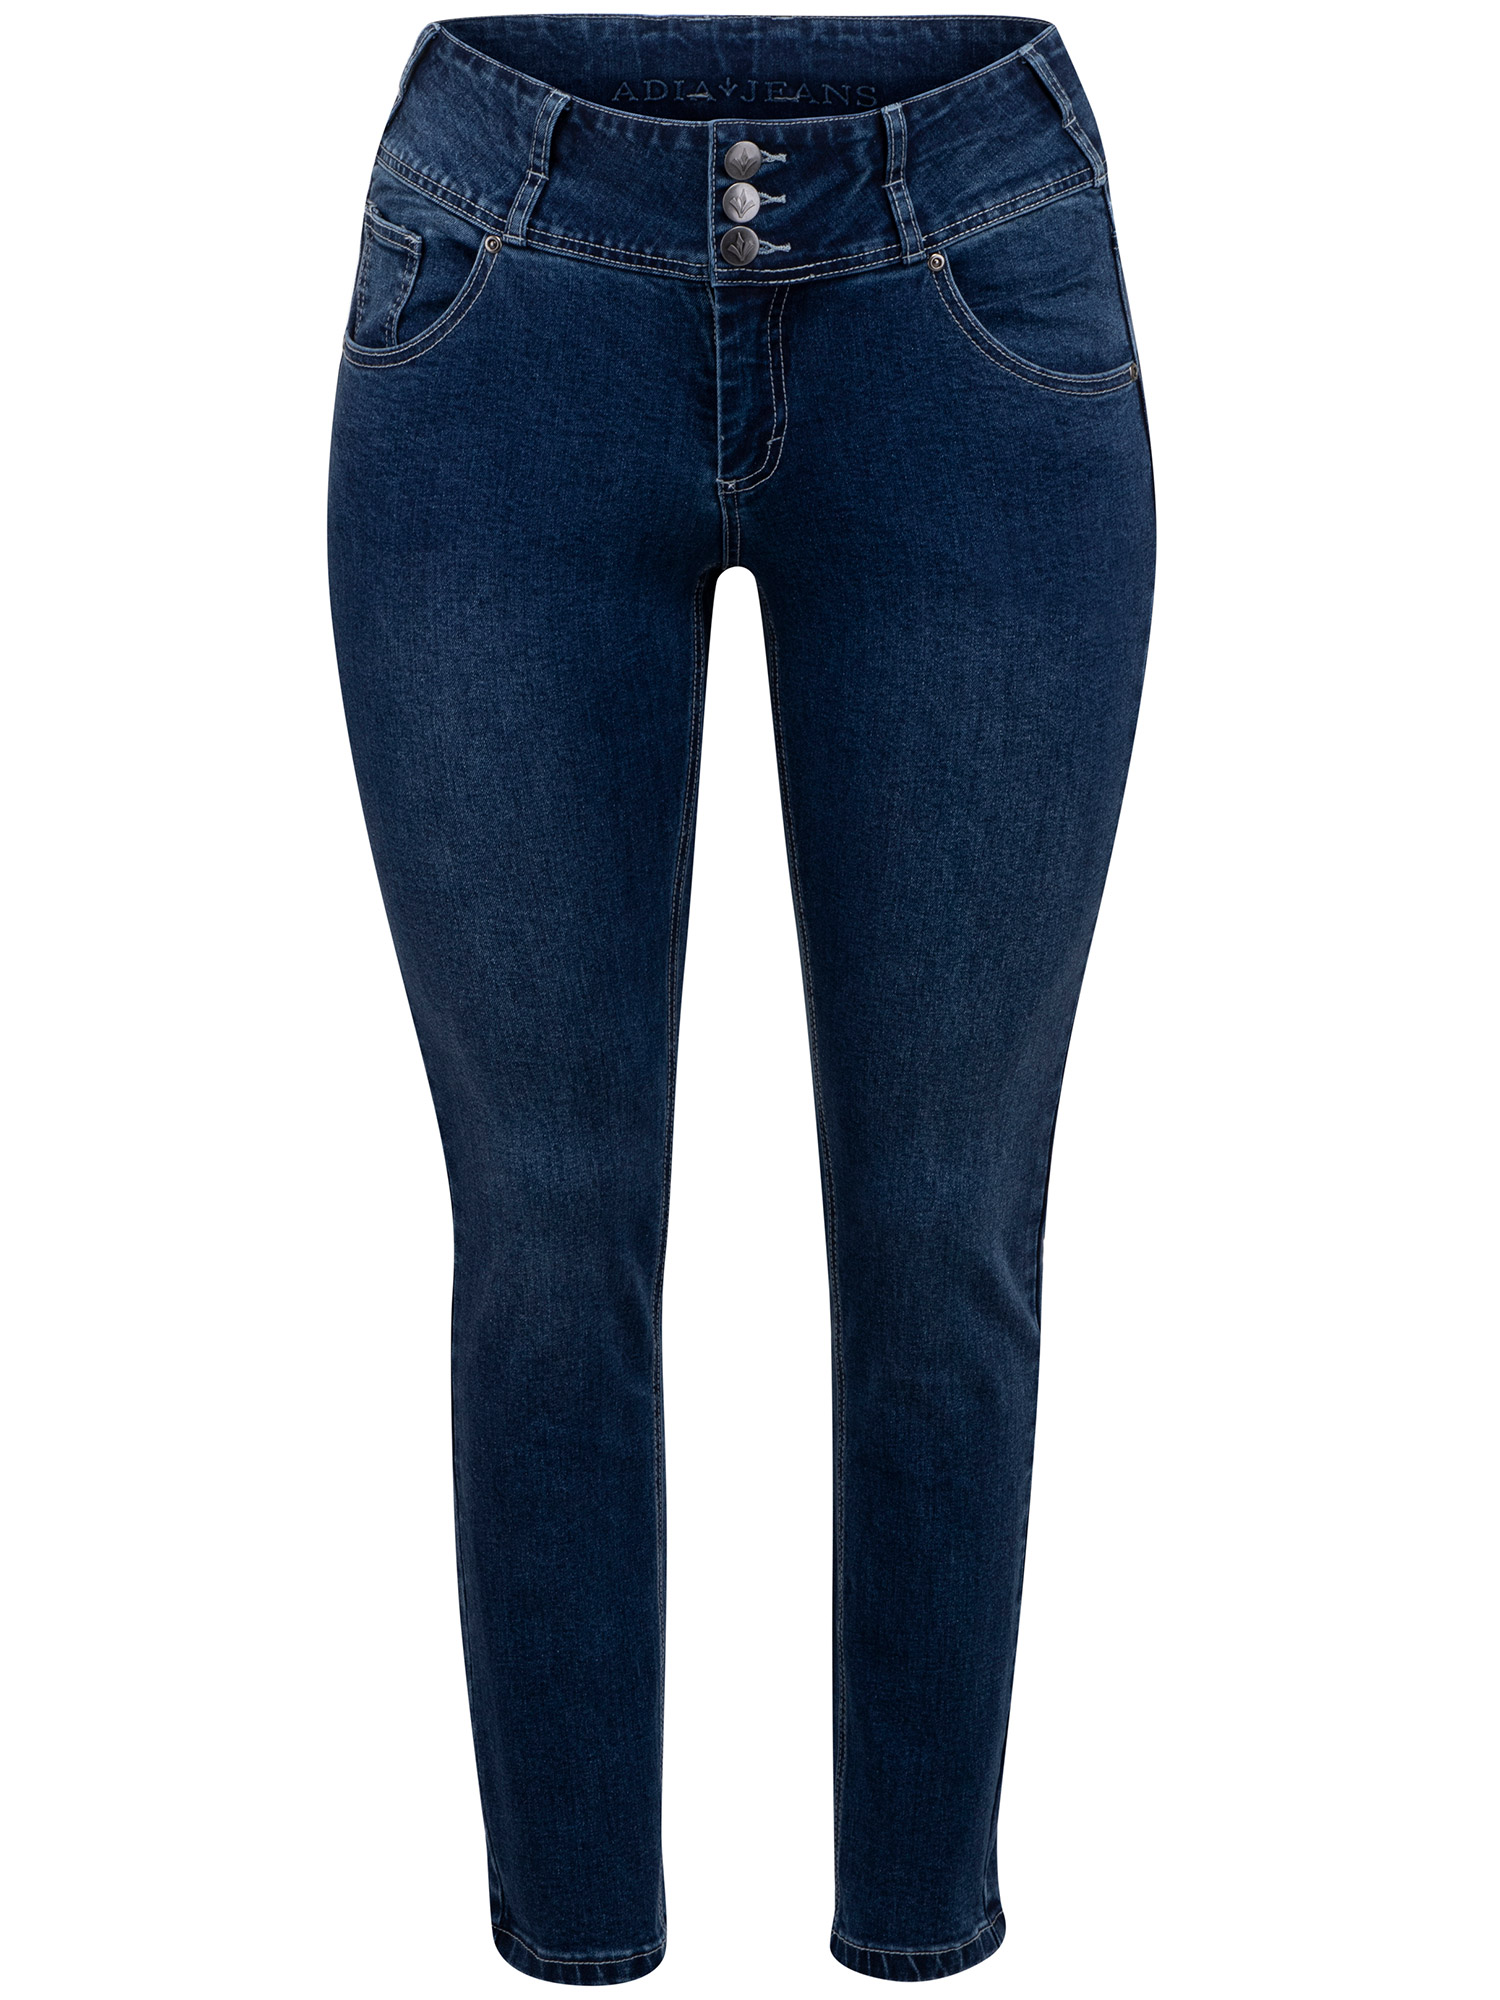 ROME - Blå jeans med bred linning fra Adia